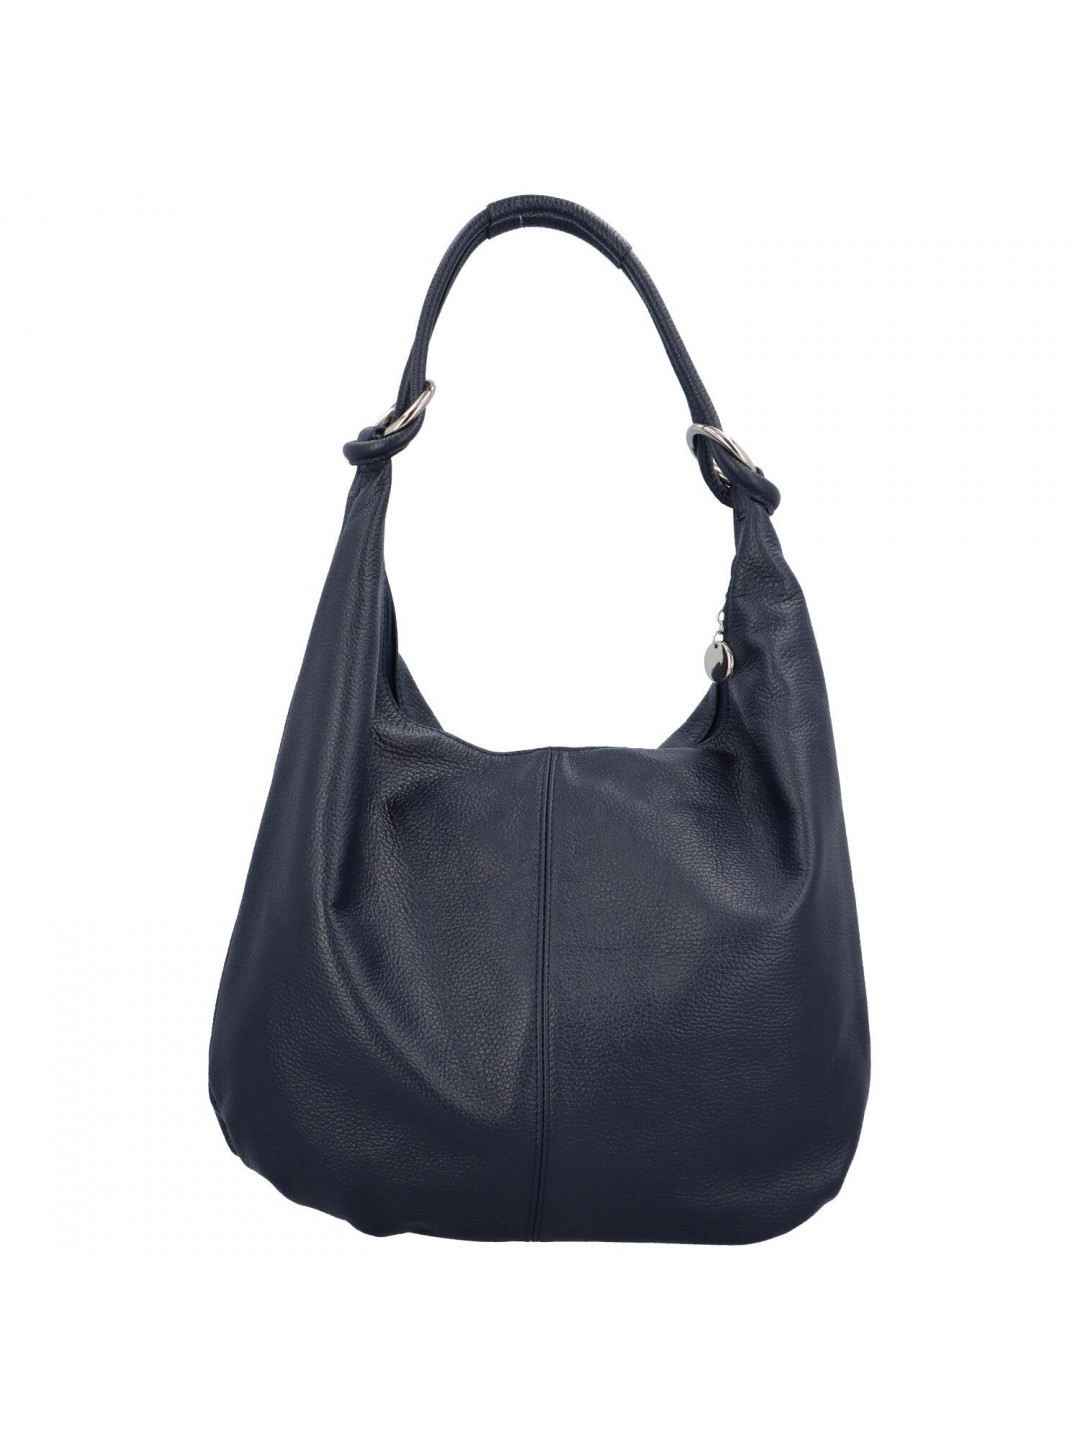 Dámská kožená kabelka přes rameno tmavě modrá – Delami Avera